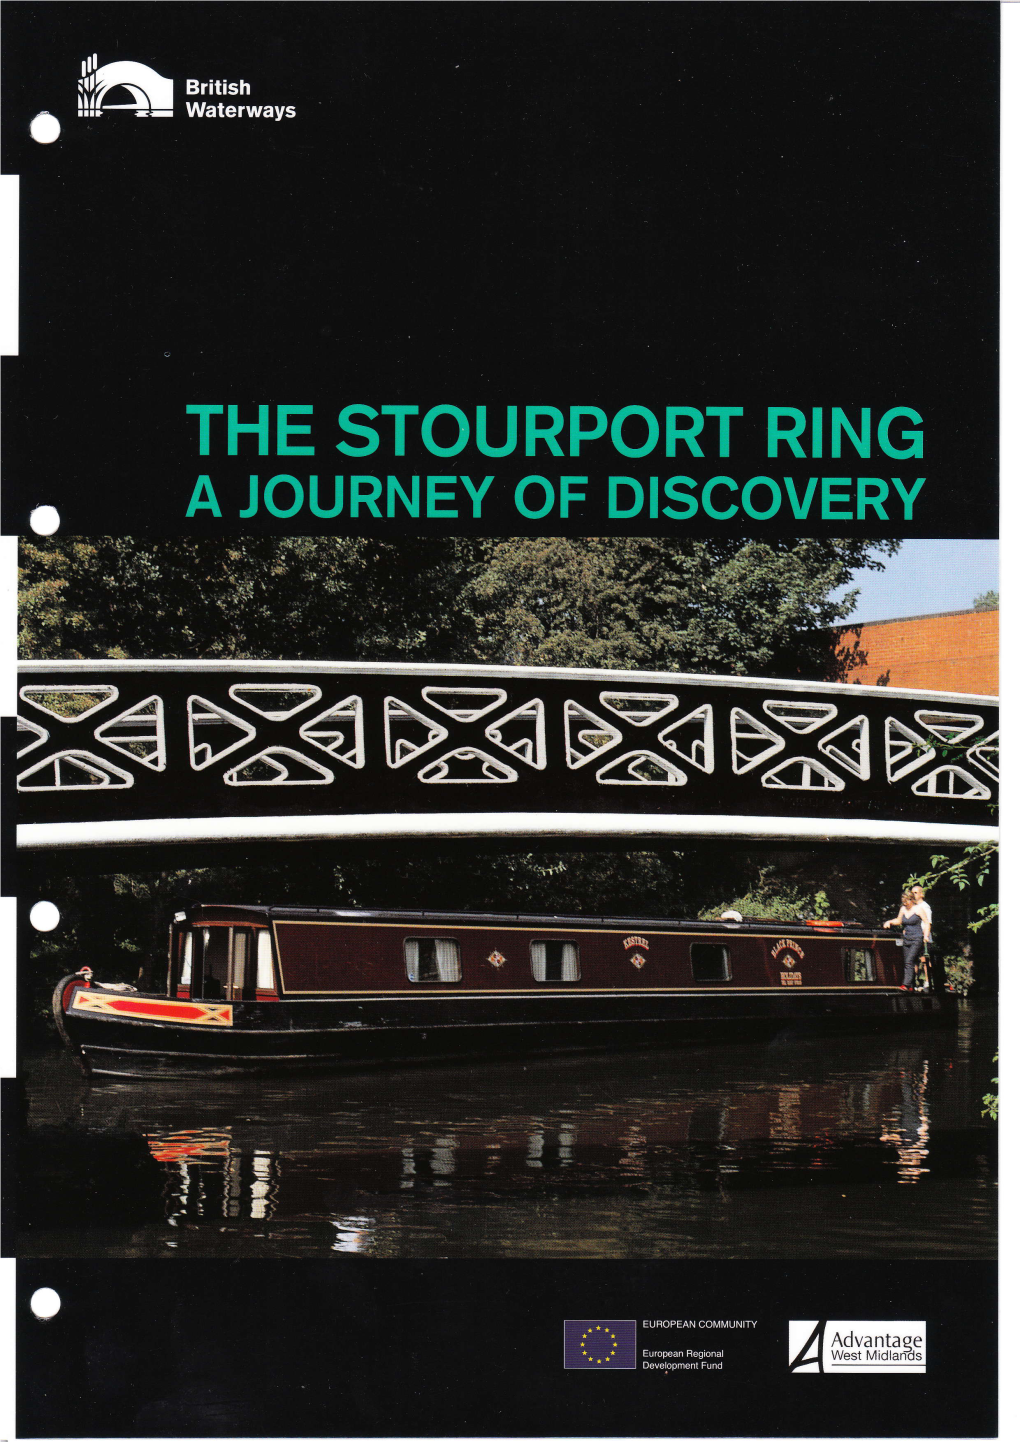 British-Waterways-Stourport-Ring